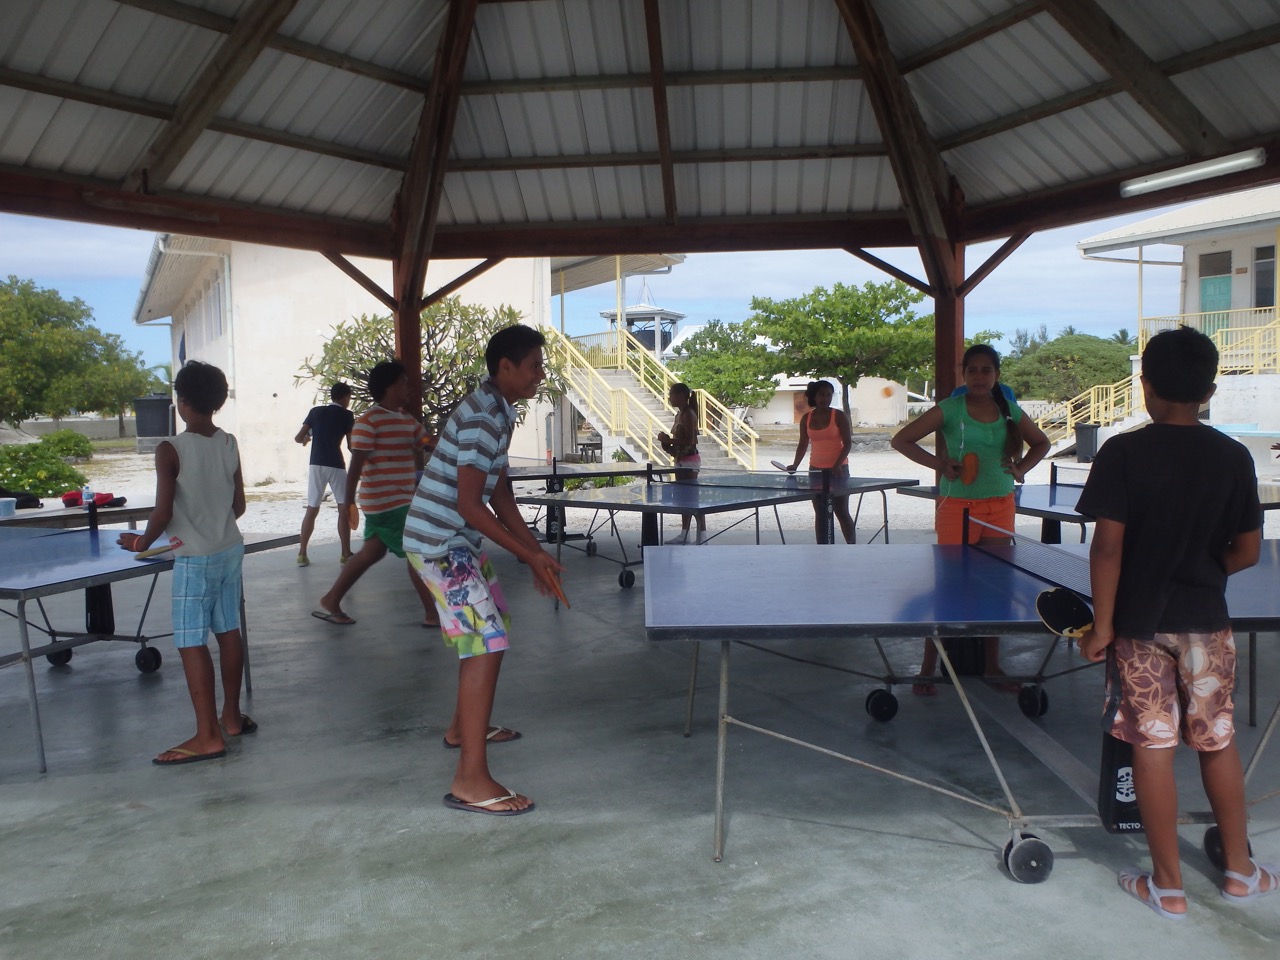 Une activité qui plaît beaucoup aussi : le ping-pong. Cinq tables ont été installées durant les vacances scolaires